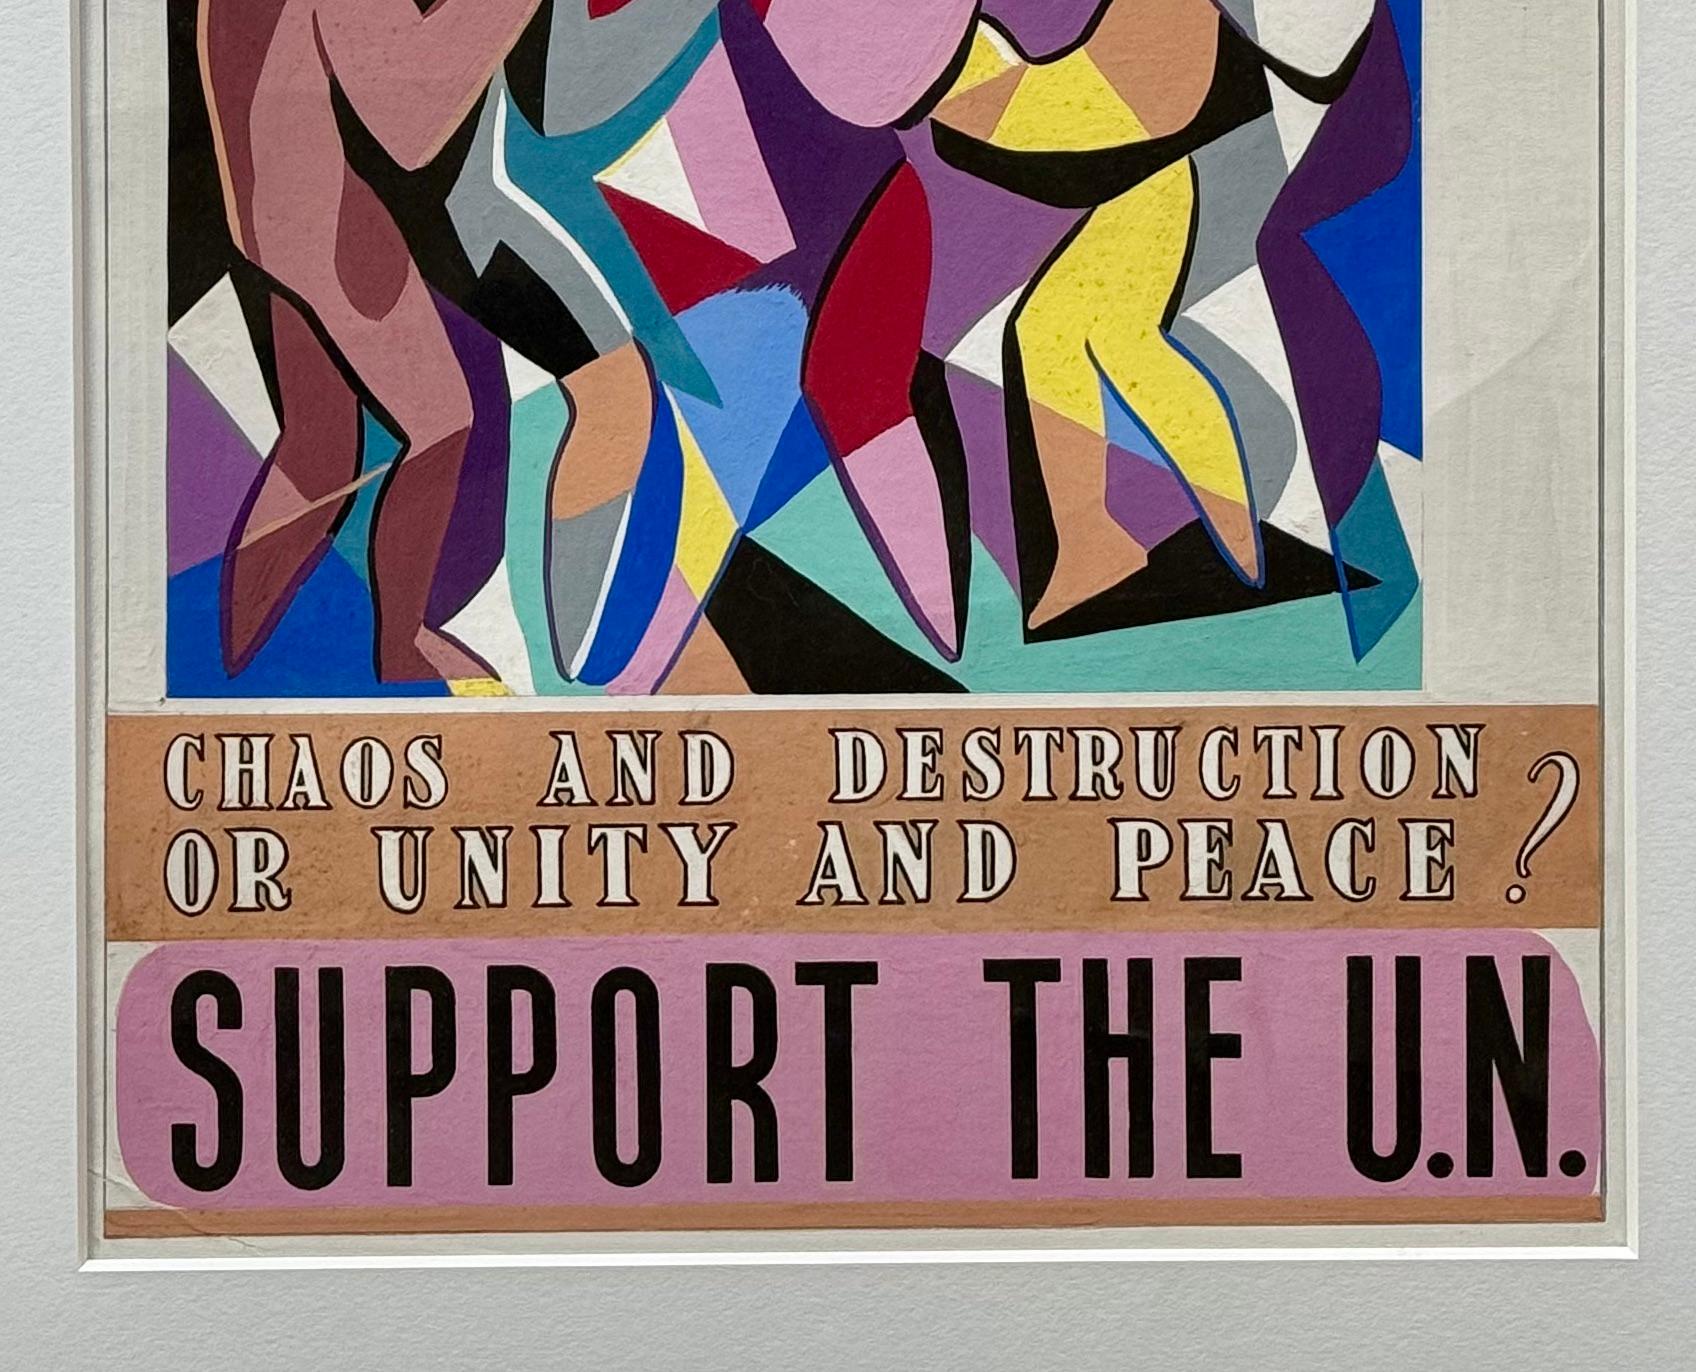 UN-Plakat-Design Amerikanische Szene Mitte des 20. Jahrhunderts Modernität WPA Weltfrieden

Jo Cain (1904 - 2003)
Wir sind alle Mitglieder der menschlichen Rasse: Vorschlag für ein UN-Plakat
21 x 16 Zoll
Tempera auf Karton, ca. 1945
Nachlassstempel